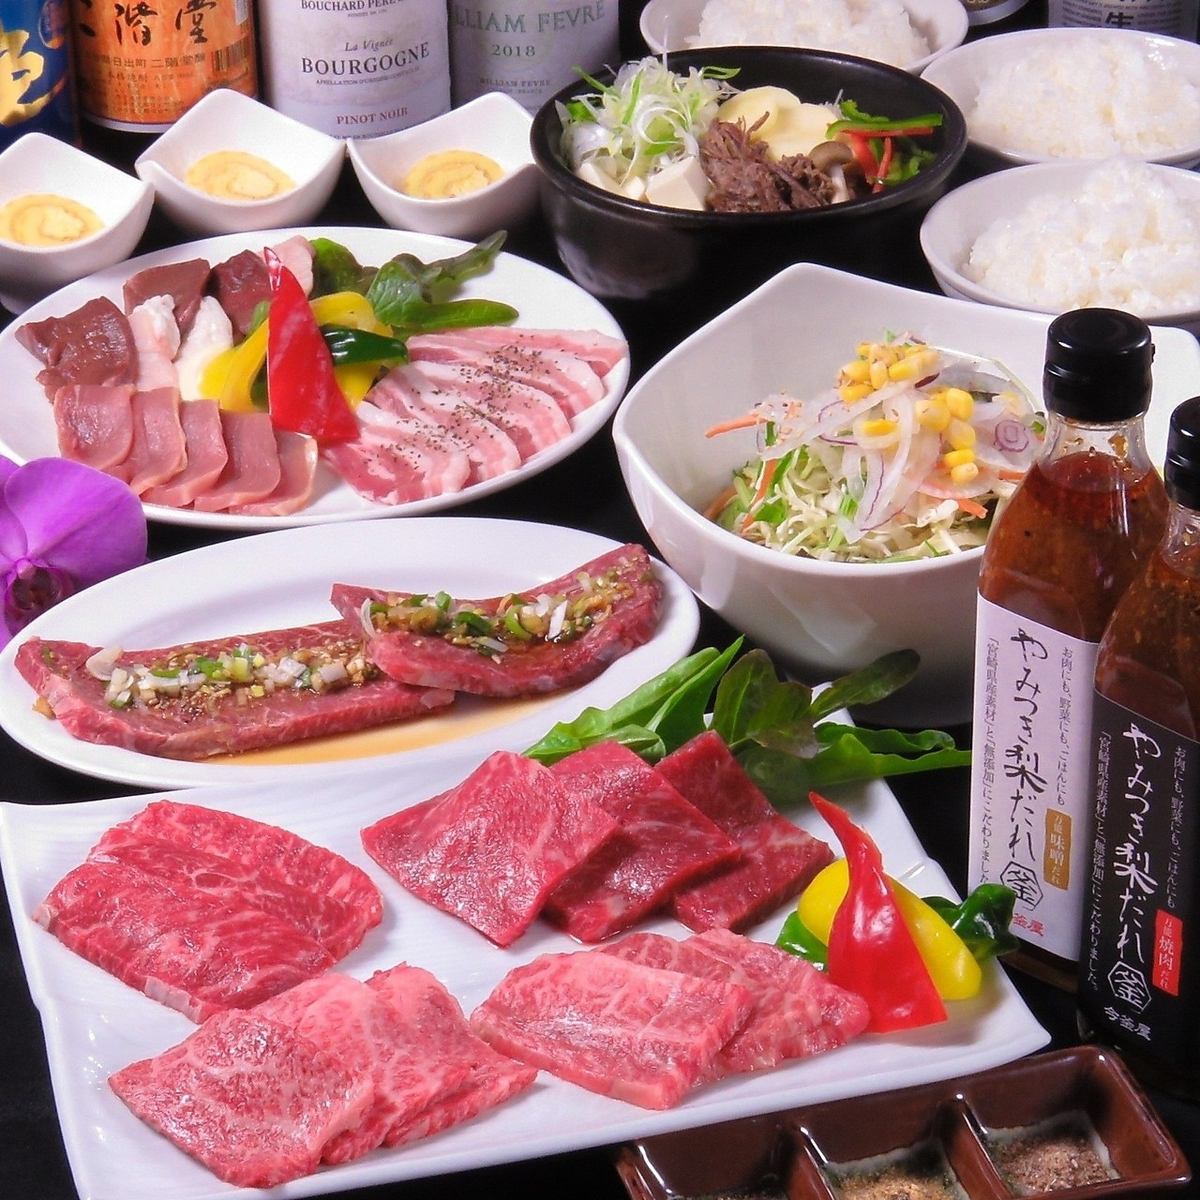 除了宮崎和黑牛肉烤肉之外，還有味噌醬和sundubu等正宗的韓國料理♪